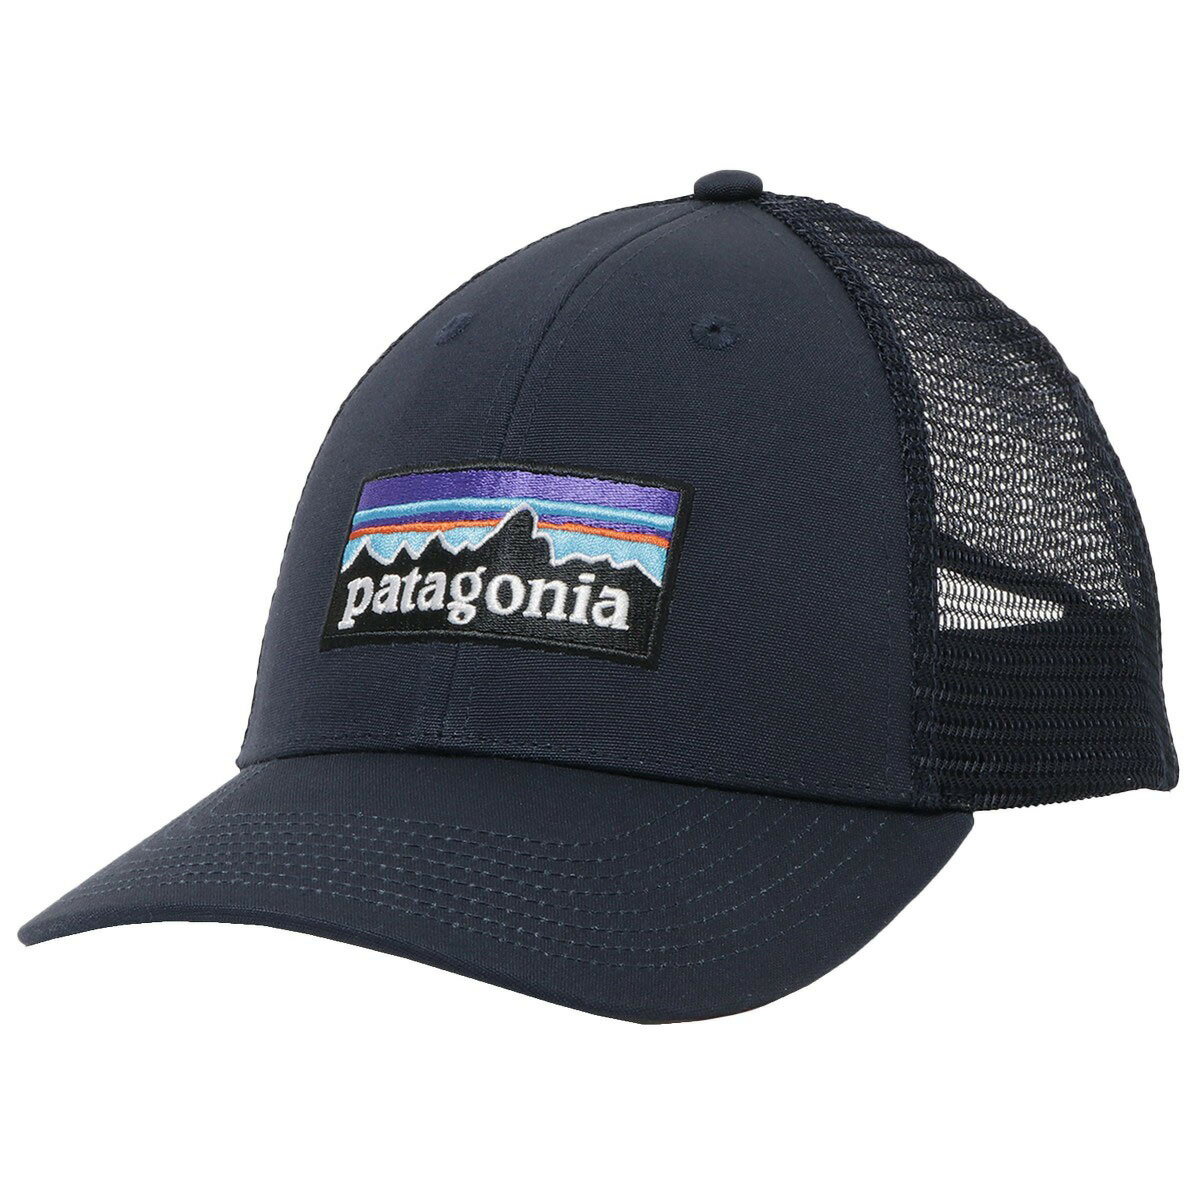 パタゴニア キャップ メンズ パタゴニア patagonia キャップ 帽子 ベースボールキャップ メッシュ 38283 NVYB fhpa00019m P-6 LOGO LOPRO TRUCKER HAT P-6ロゴ ロープロ トラッカー ハット Navy Blue ネイビー